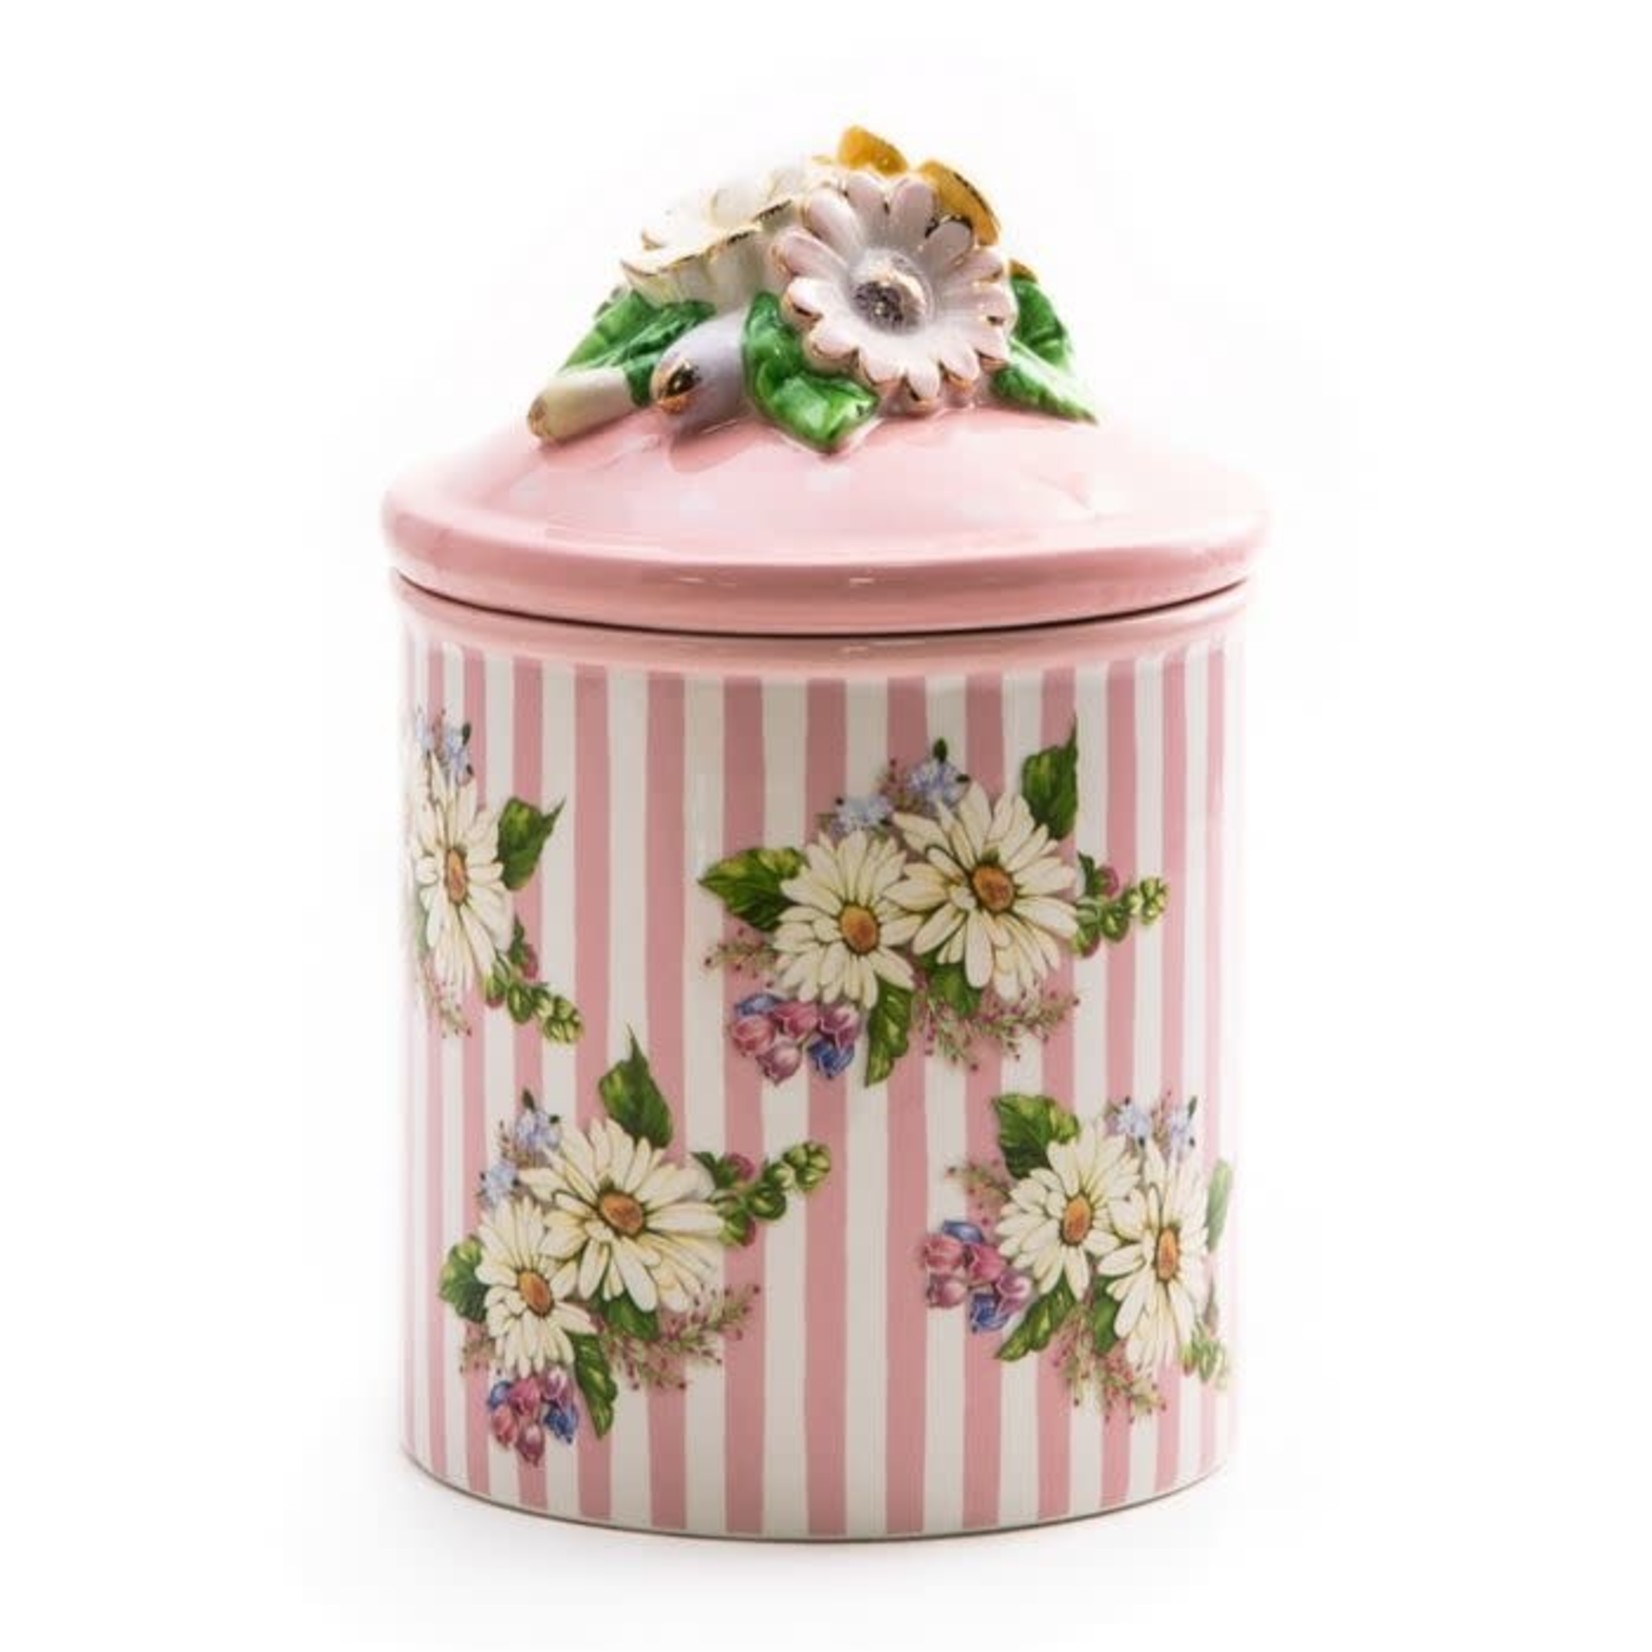 https://cdn.shoplightspeed.com/shops/654283/files/53118354/1652x1652x1/mackenzie-childs-wildflowers-small-canister-pink.jpg